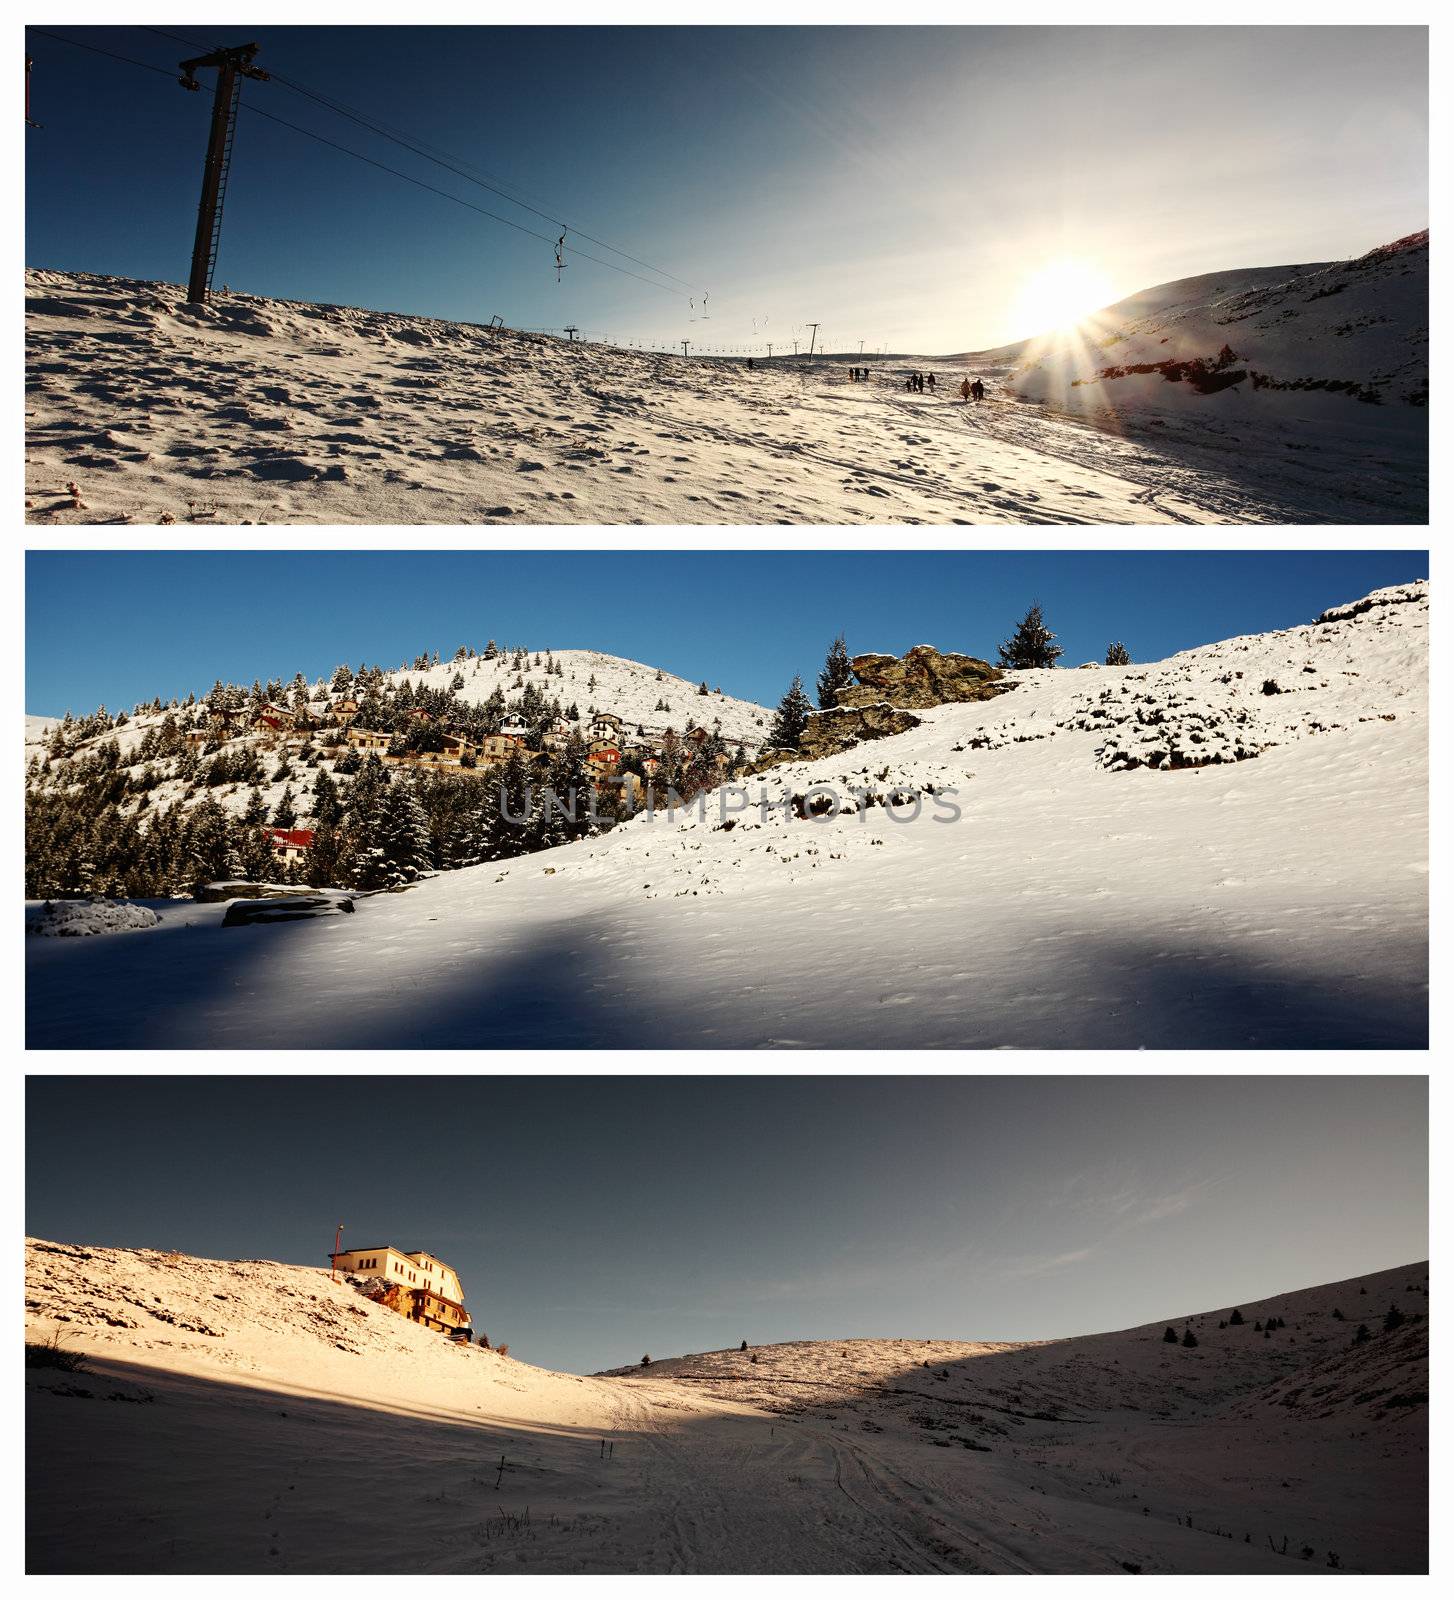 ski center landscapes by kokimk